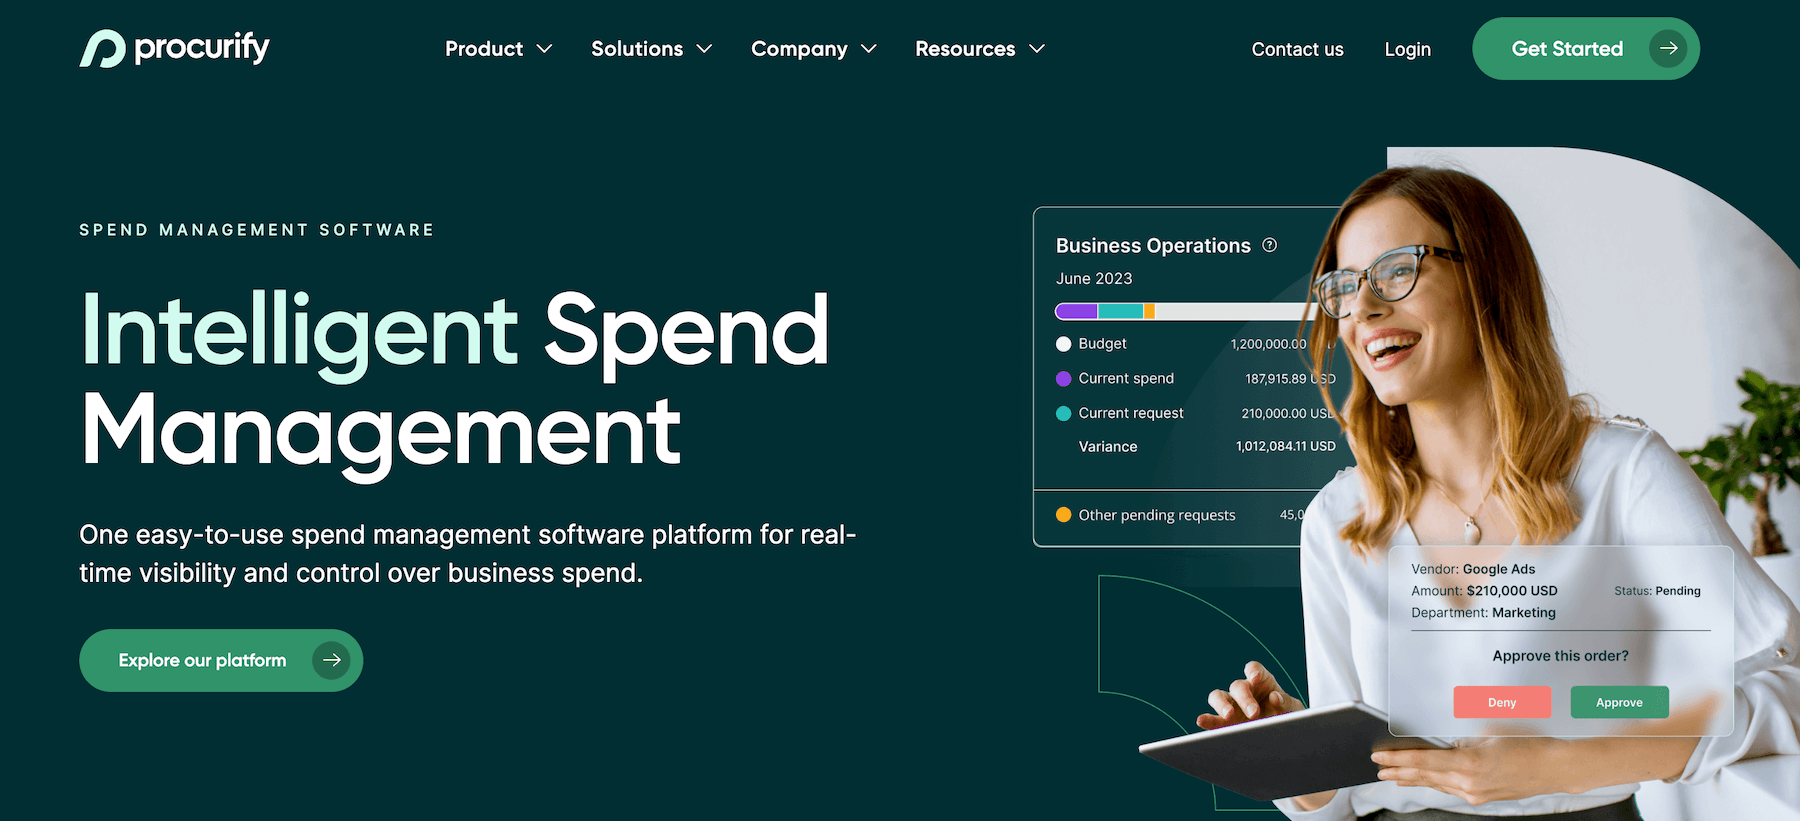 Procurify homepage: Intelligent Spend Management